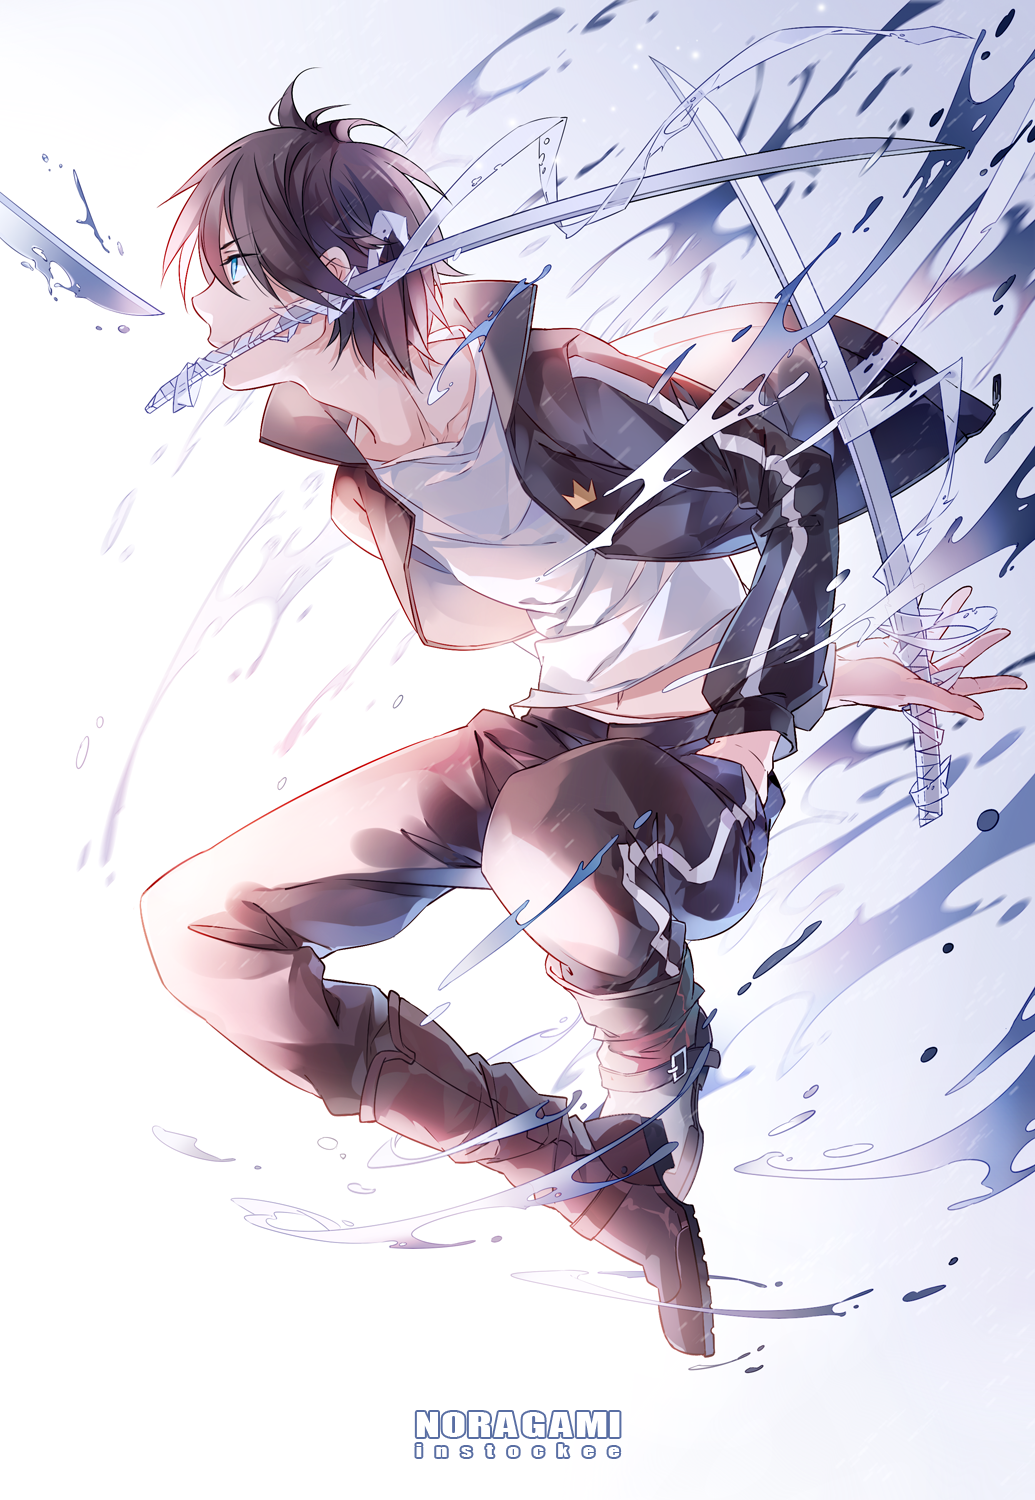 Anime 1035x1500 anime boys Noragami black hair Yato (Noragami) blue eyes sword anime weapon white background